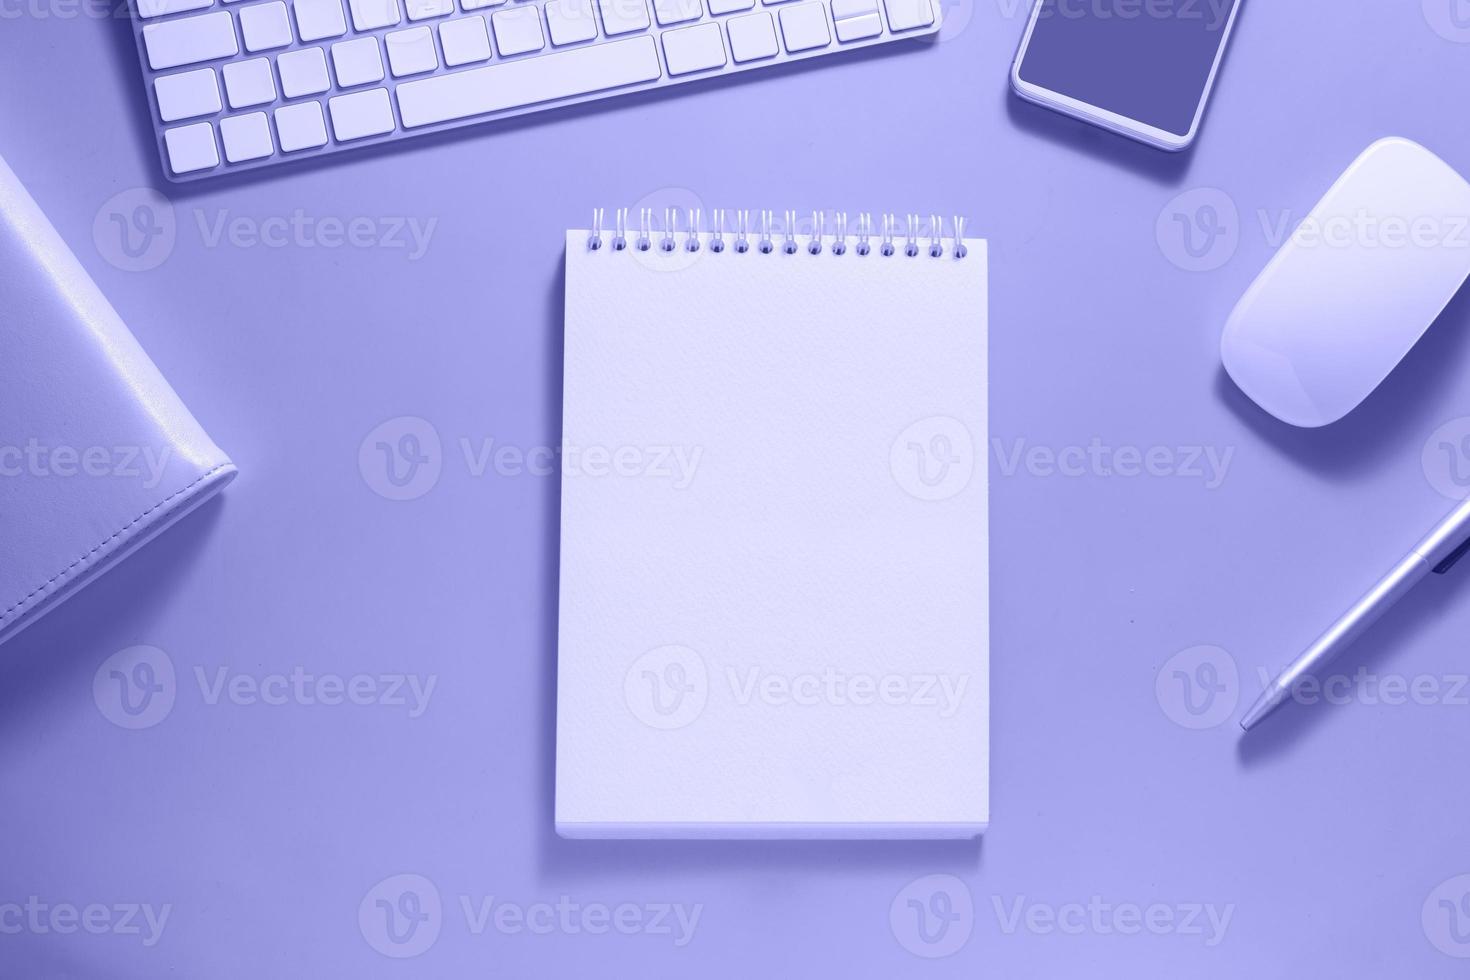 vista dall'alto del desktop con tastiera, mouse e taccuino vuoto su sfondo a colori molto peri. concetto di obiettivi e piani aziendali per il nuovo anno foto